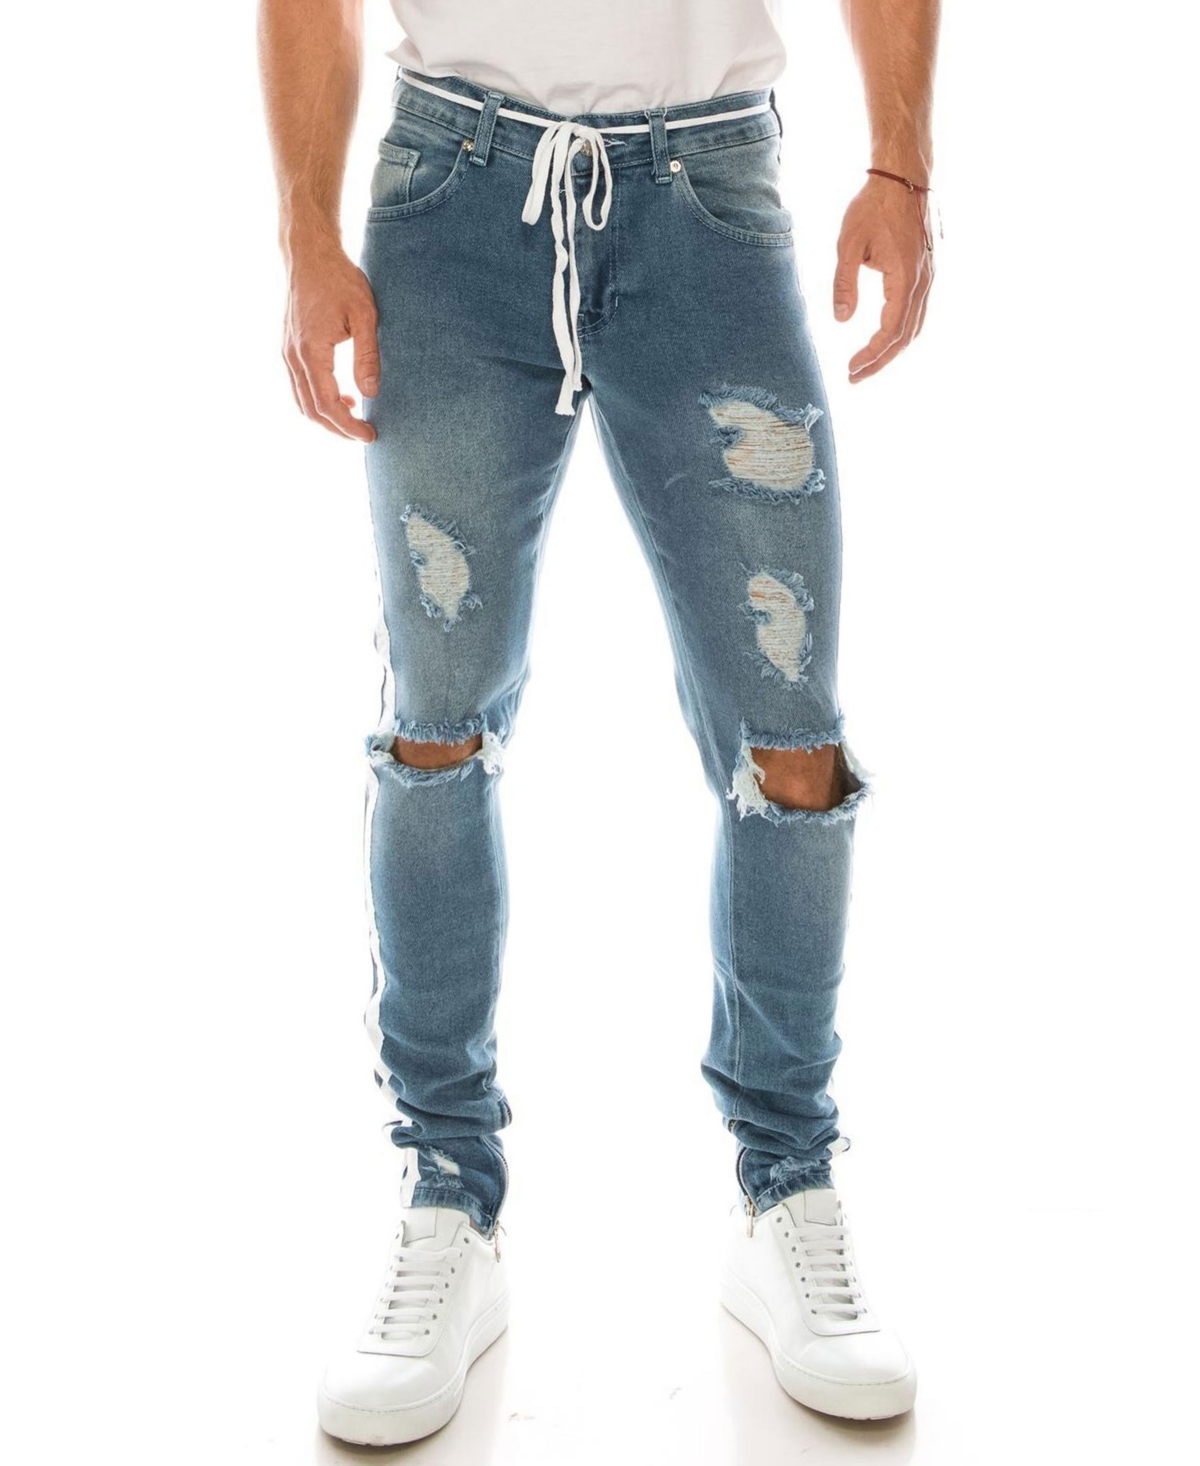 Men's Modern Skinny Fit Distressed Track Jeans - Light Blue